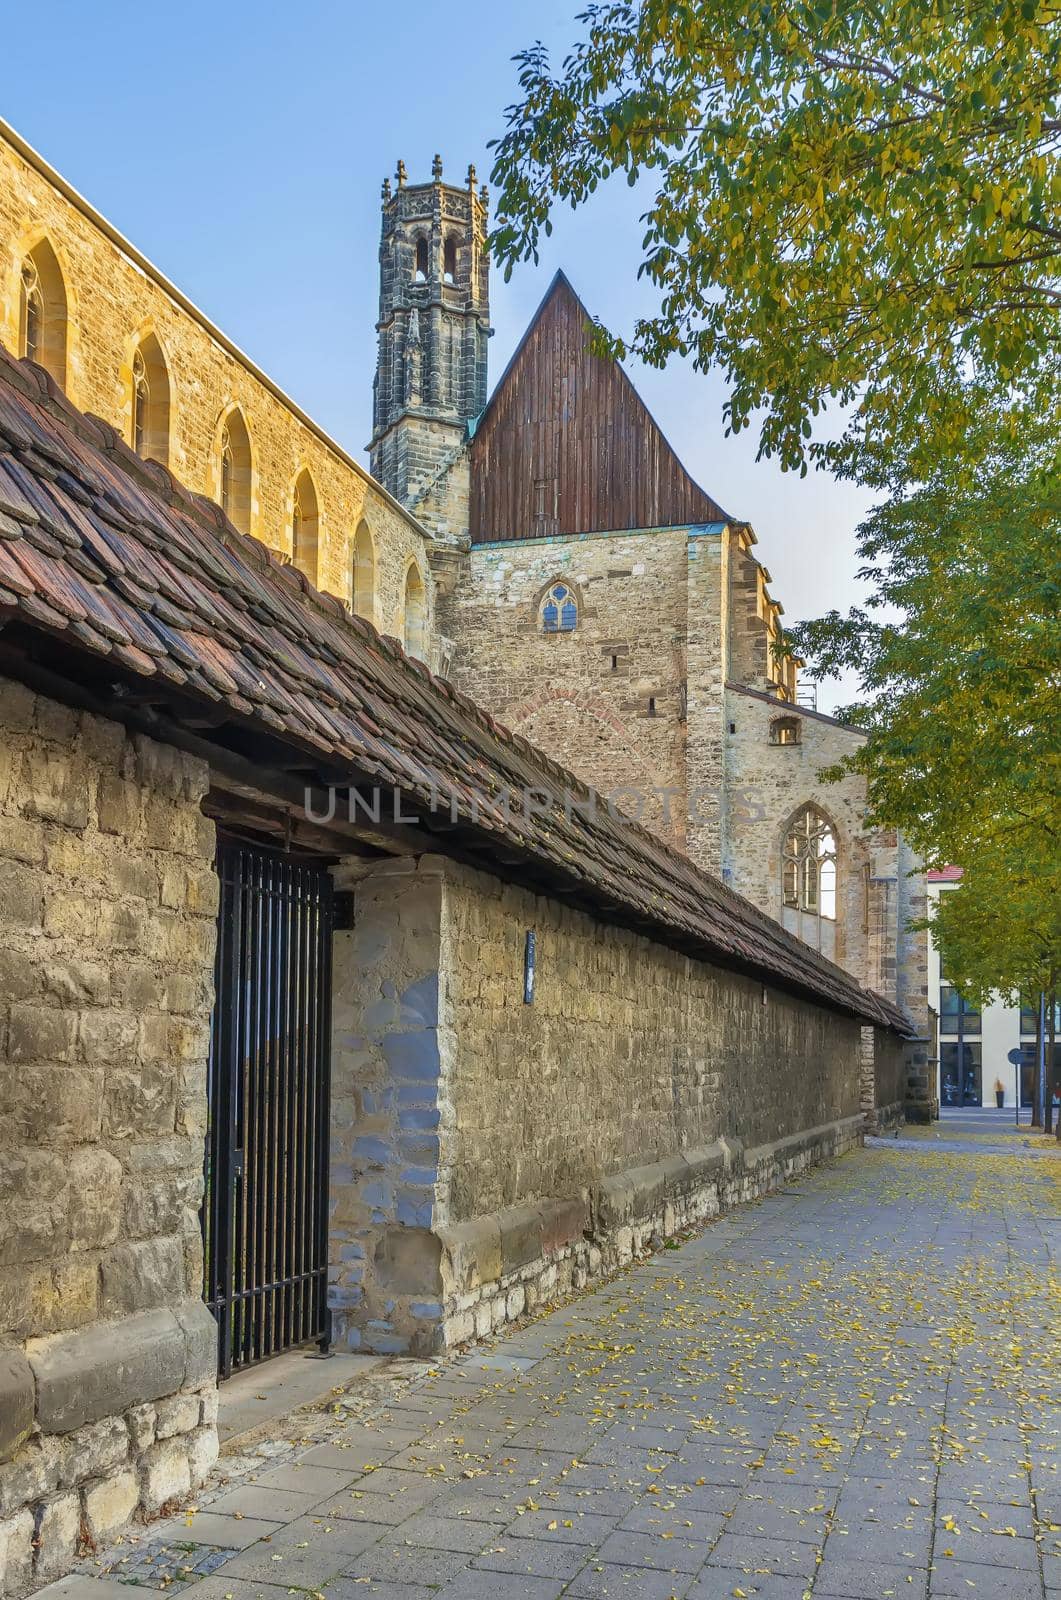 Barfusser Church, Erfurt, Germany by borisb17